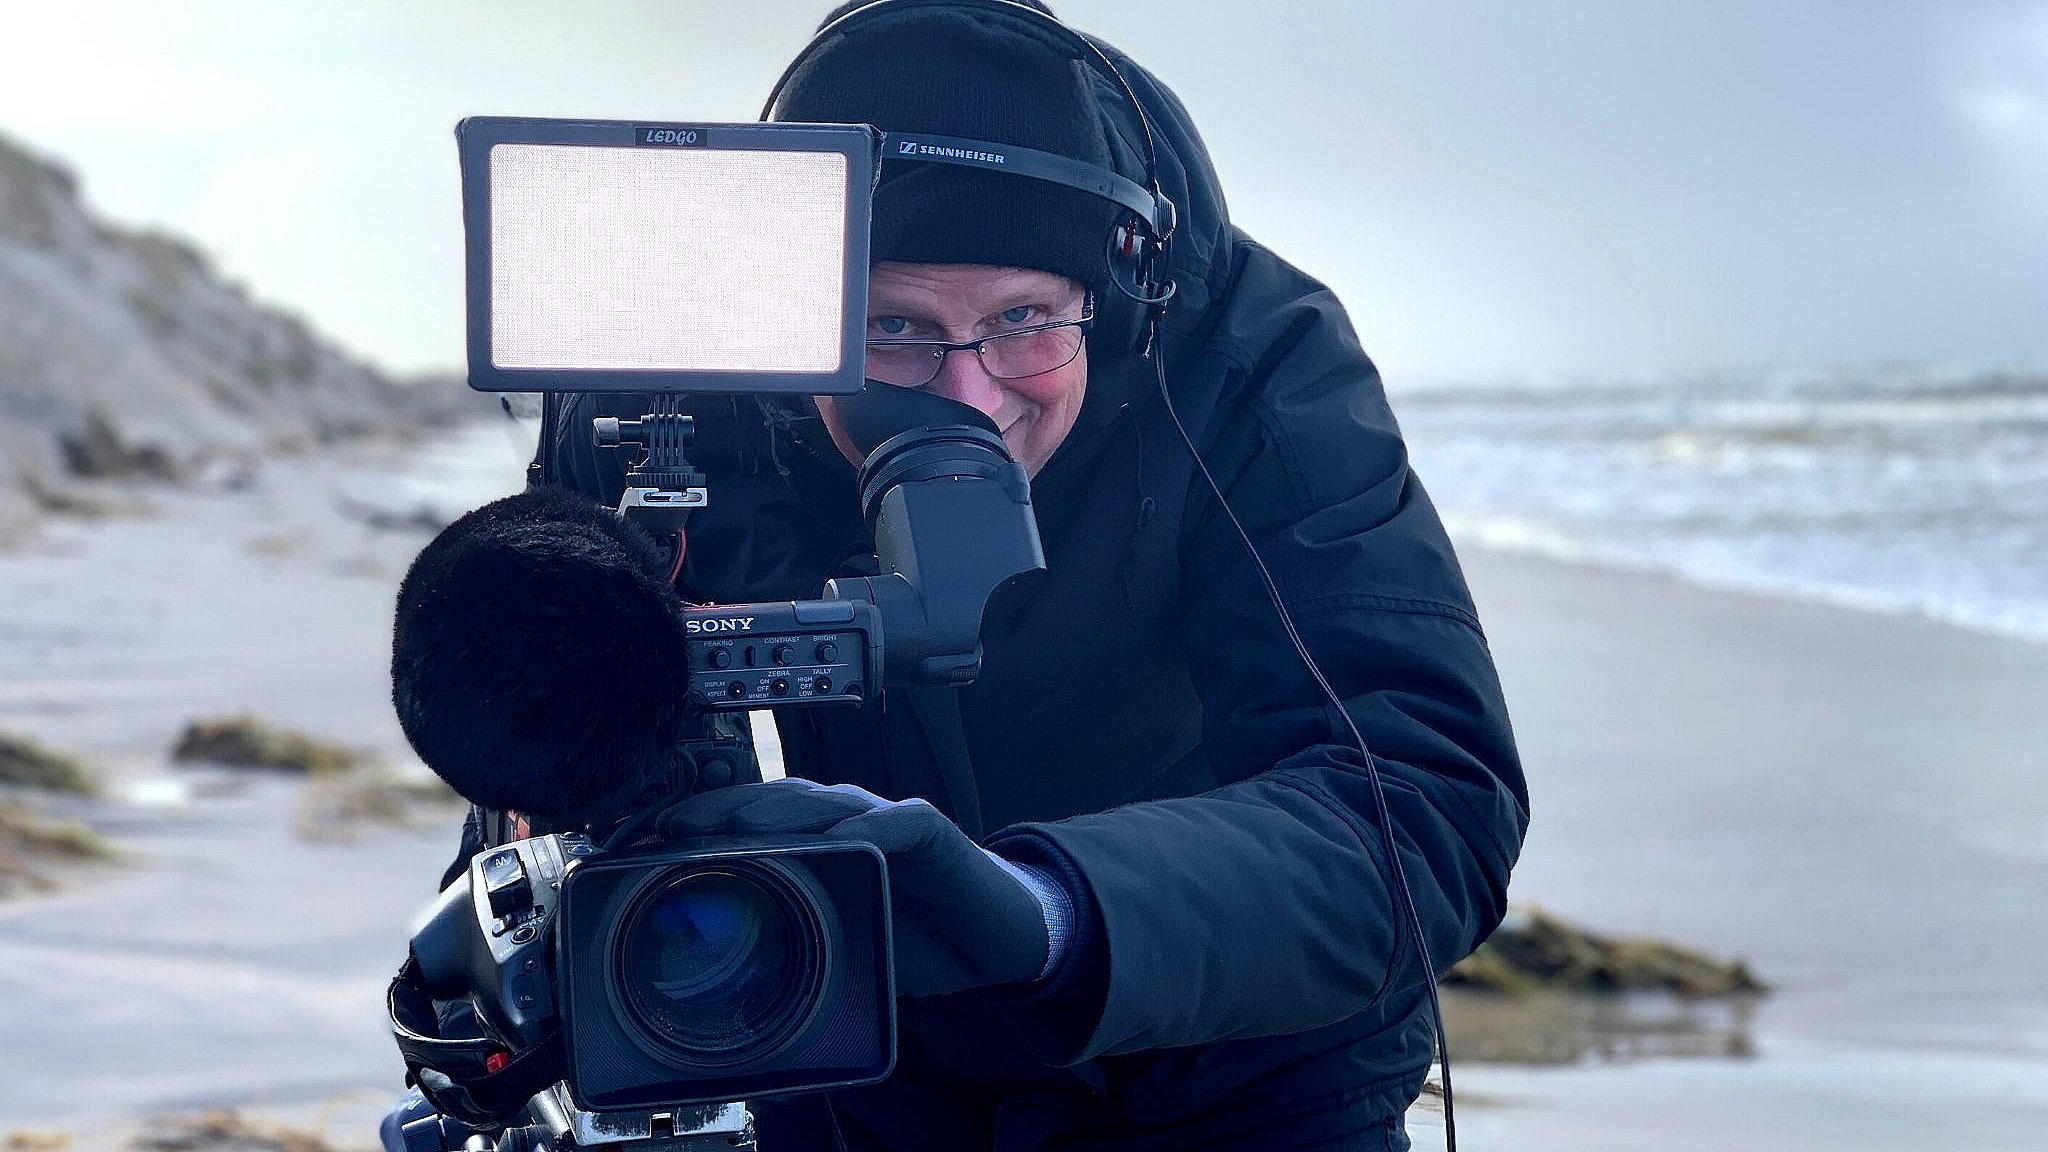 Hundredvis af nordjyder er gennem årene blevet filmet af Ivan Johan Hansen til nyhedsindslag og programmer.